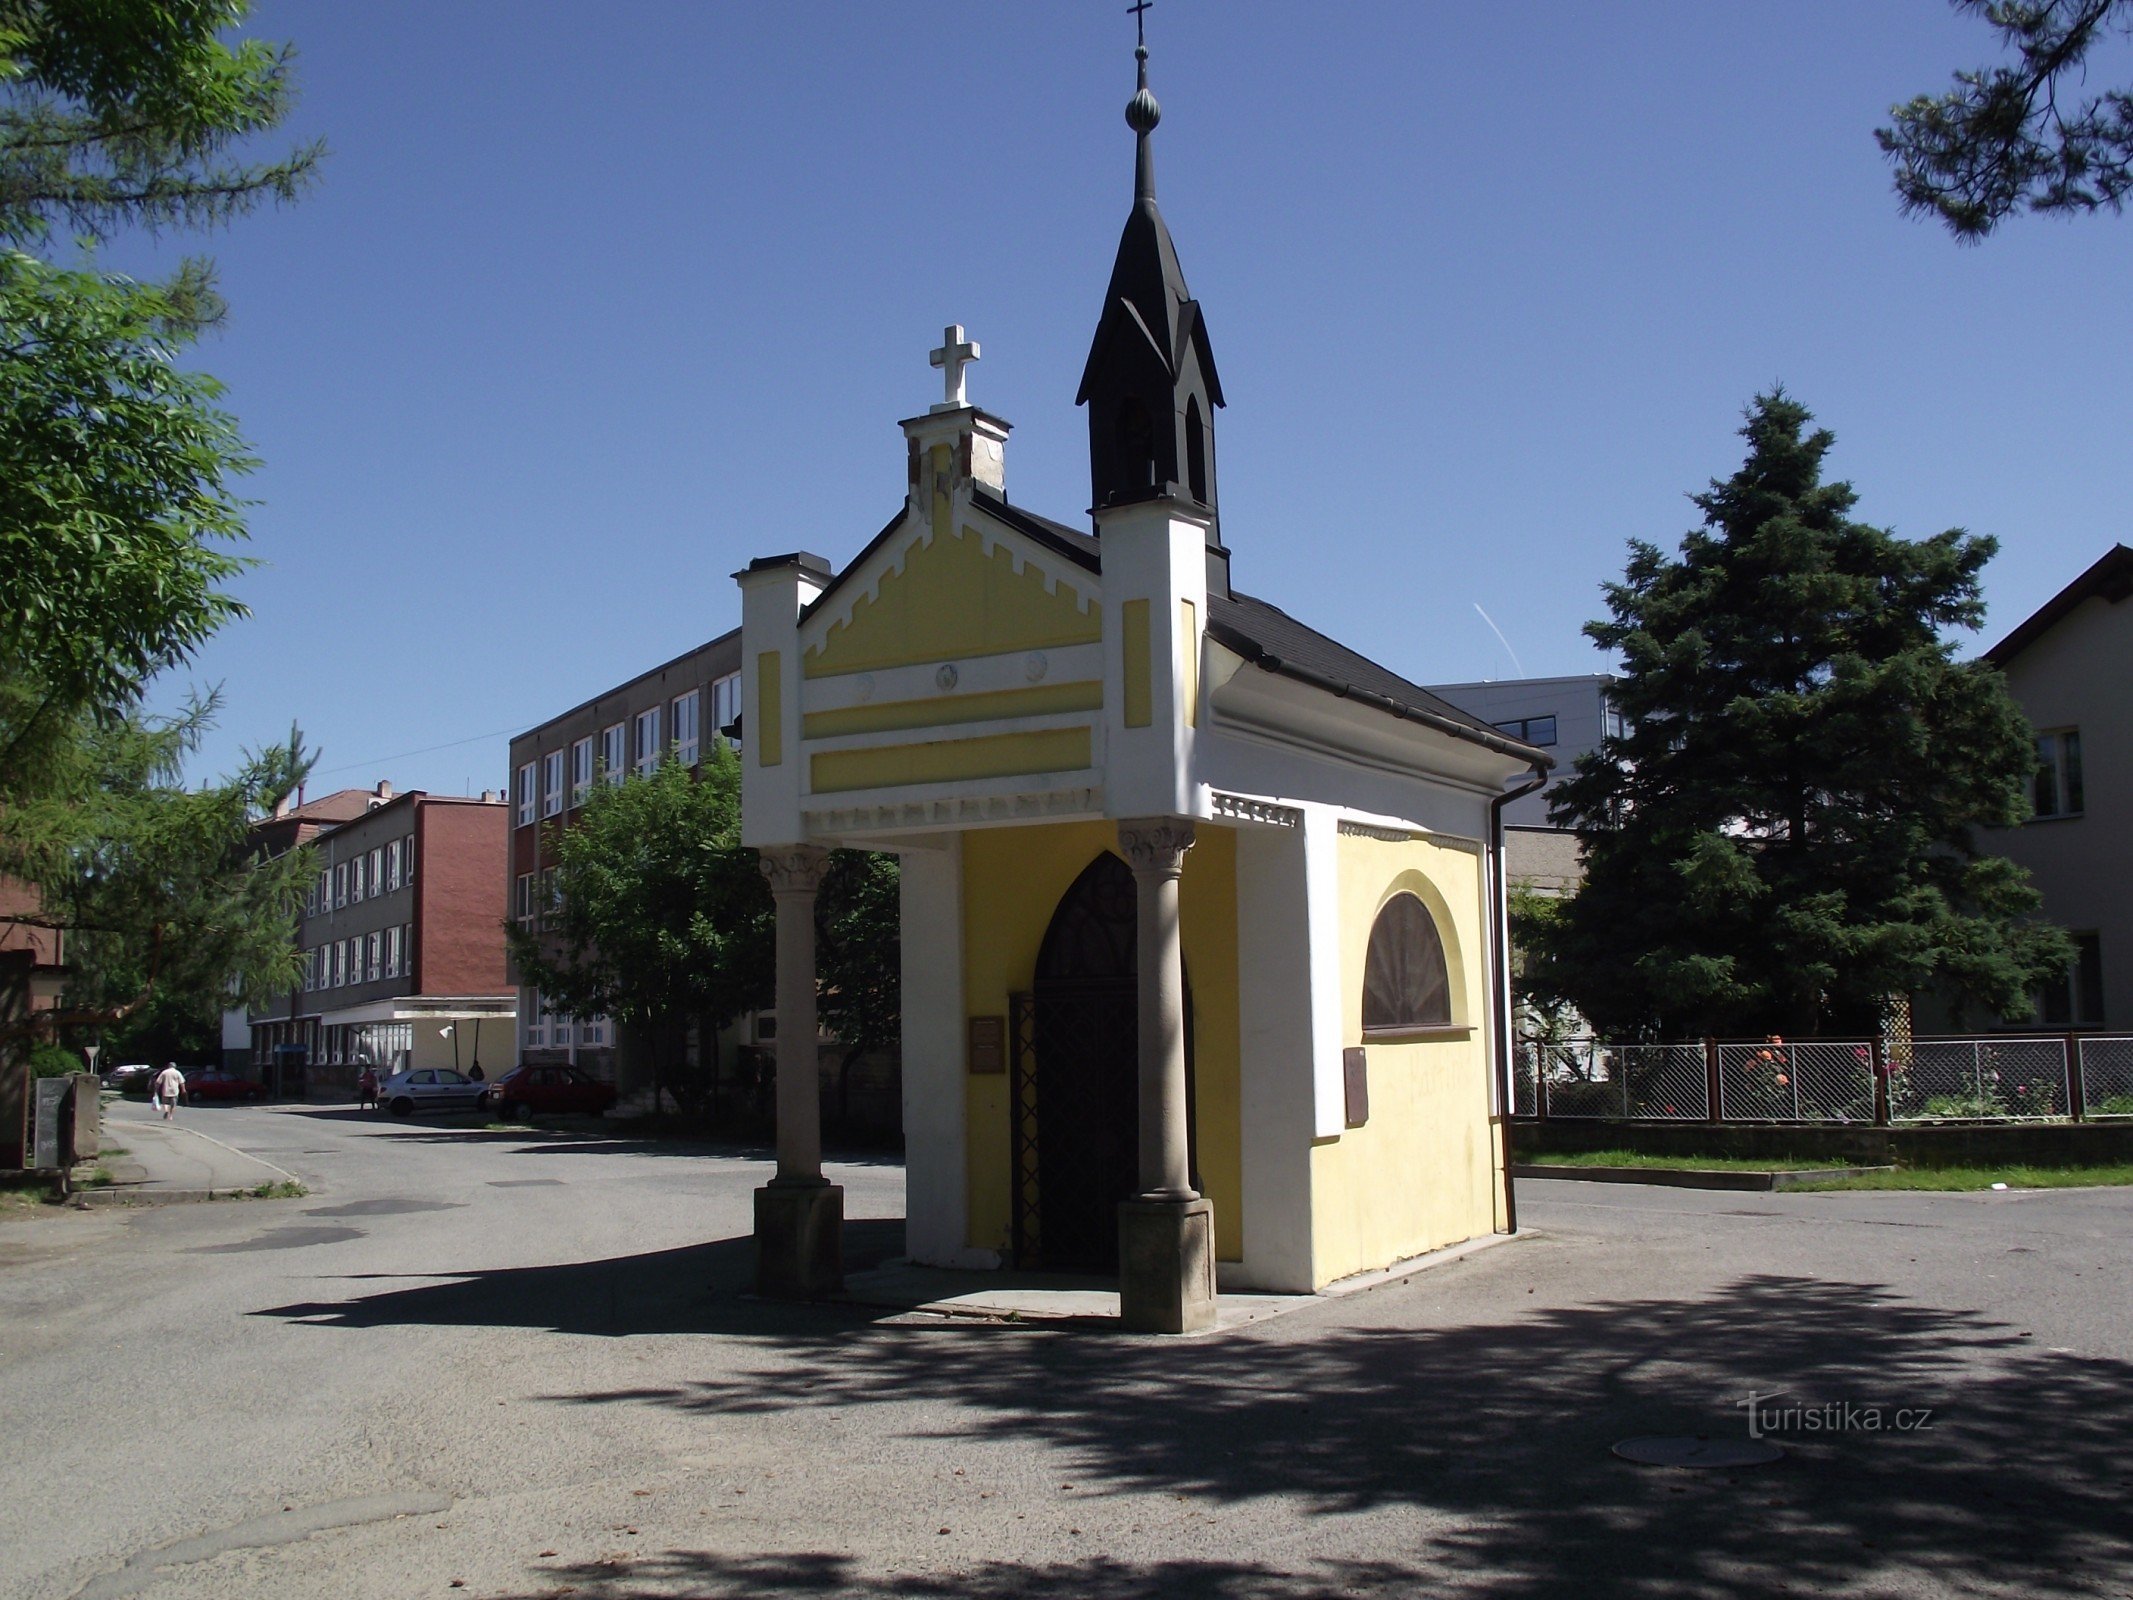 Valašské Meziříčí (Krásno) – chapel of St. Rocha